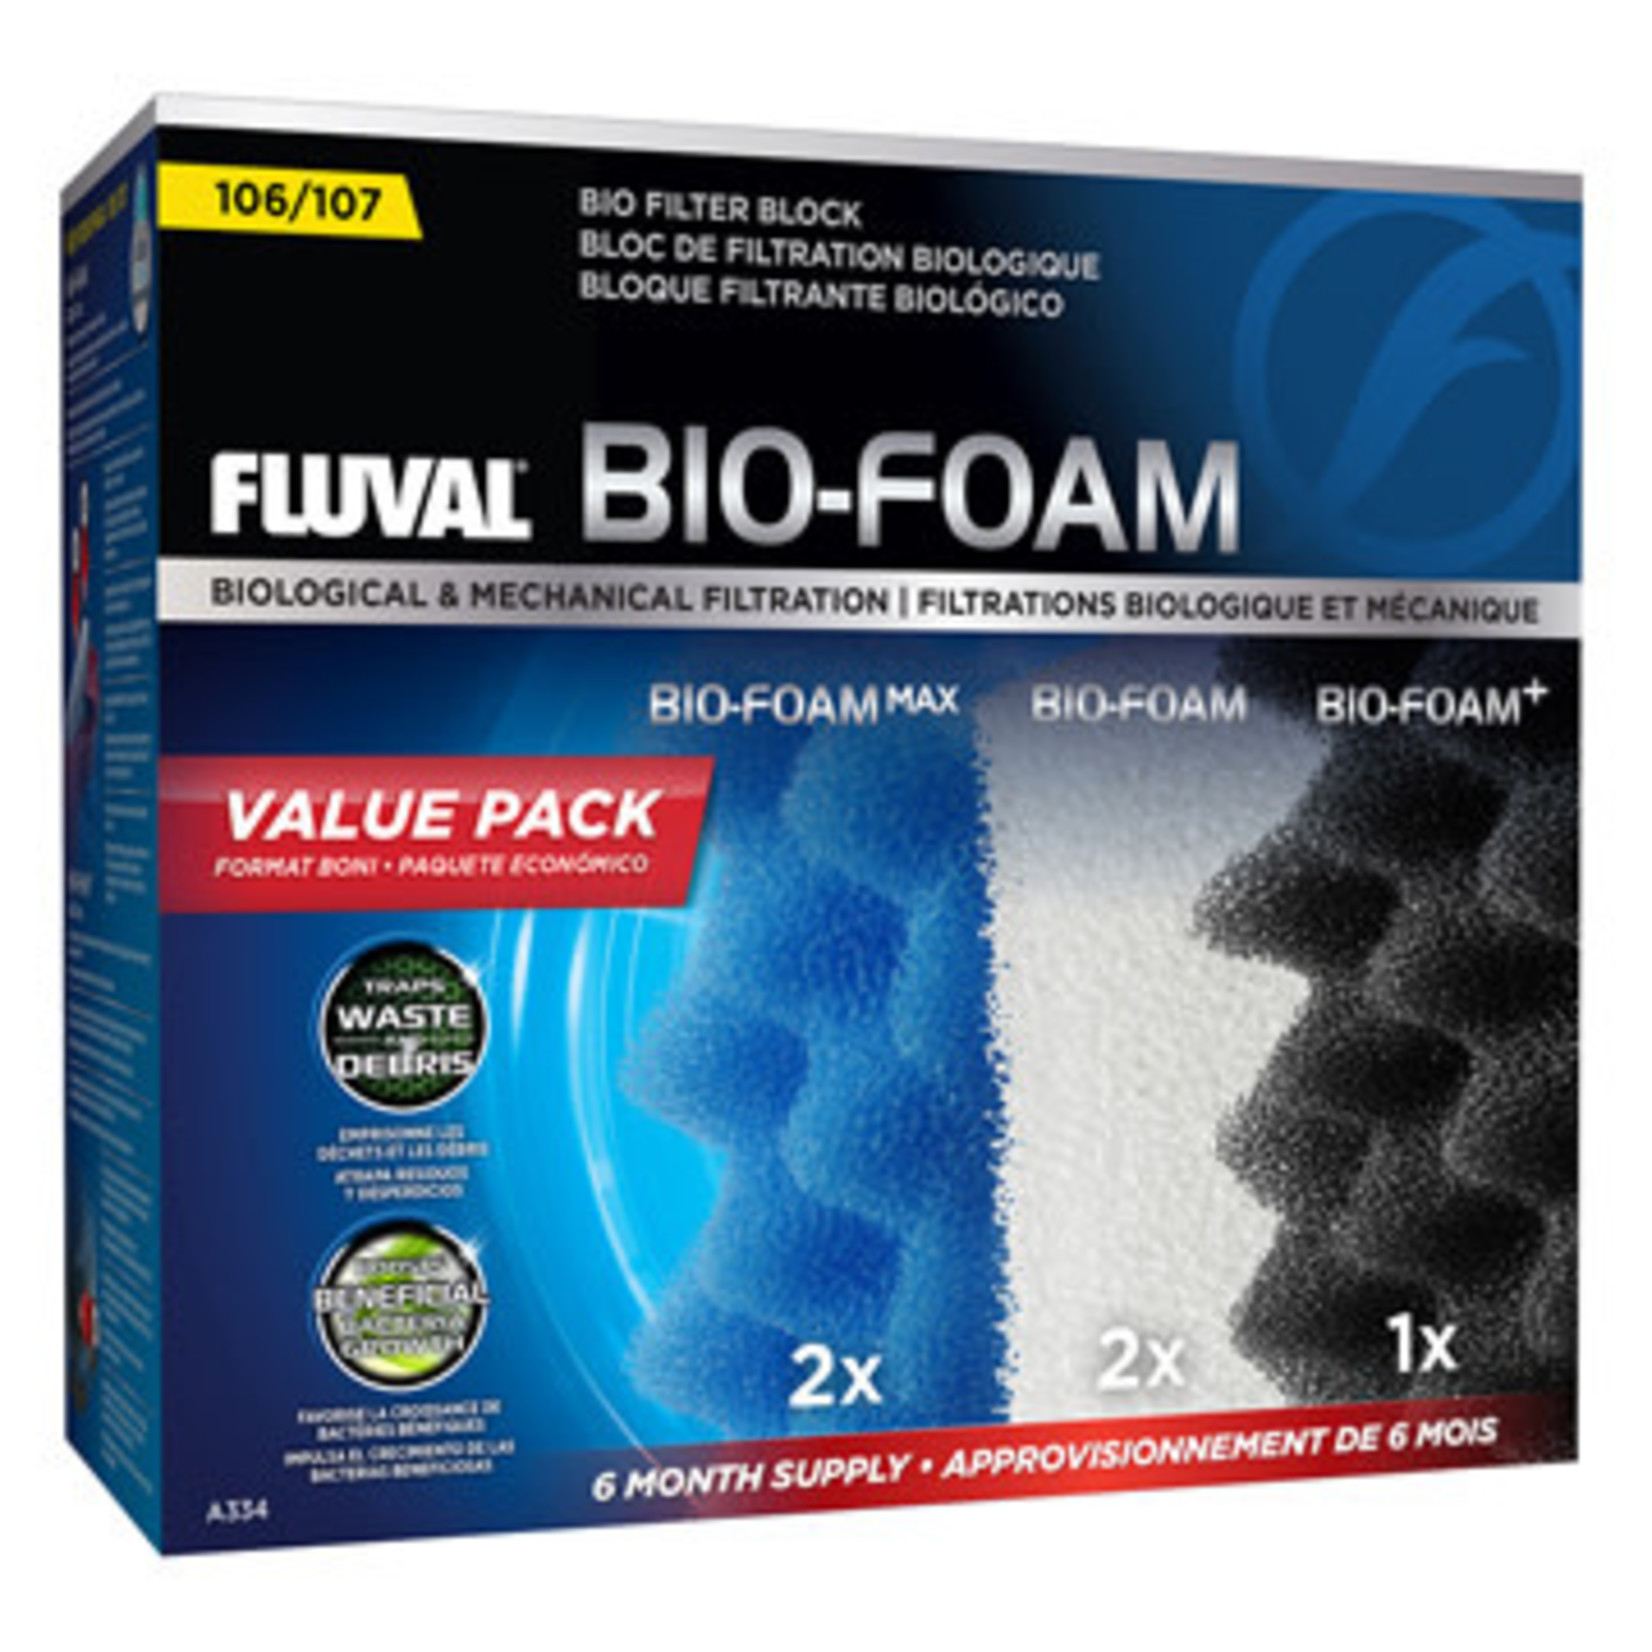 Fluval Fluval 107 Bio-Foam Value Pack